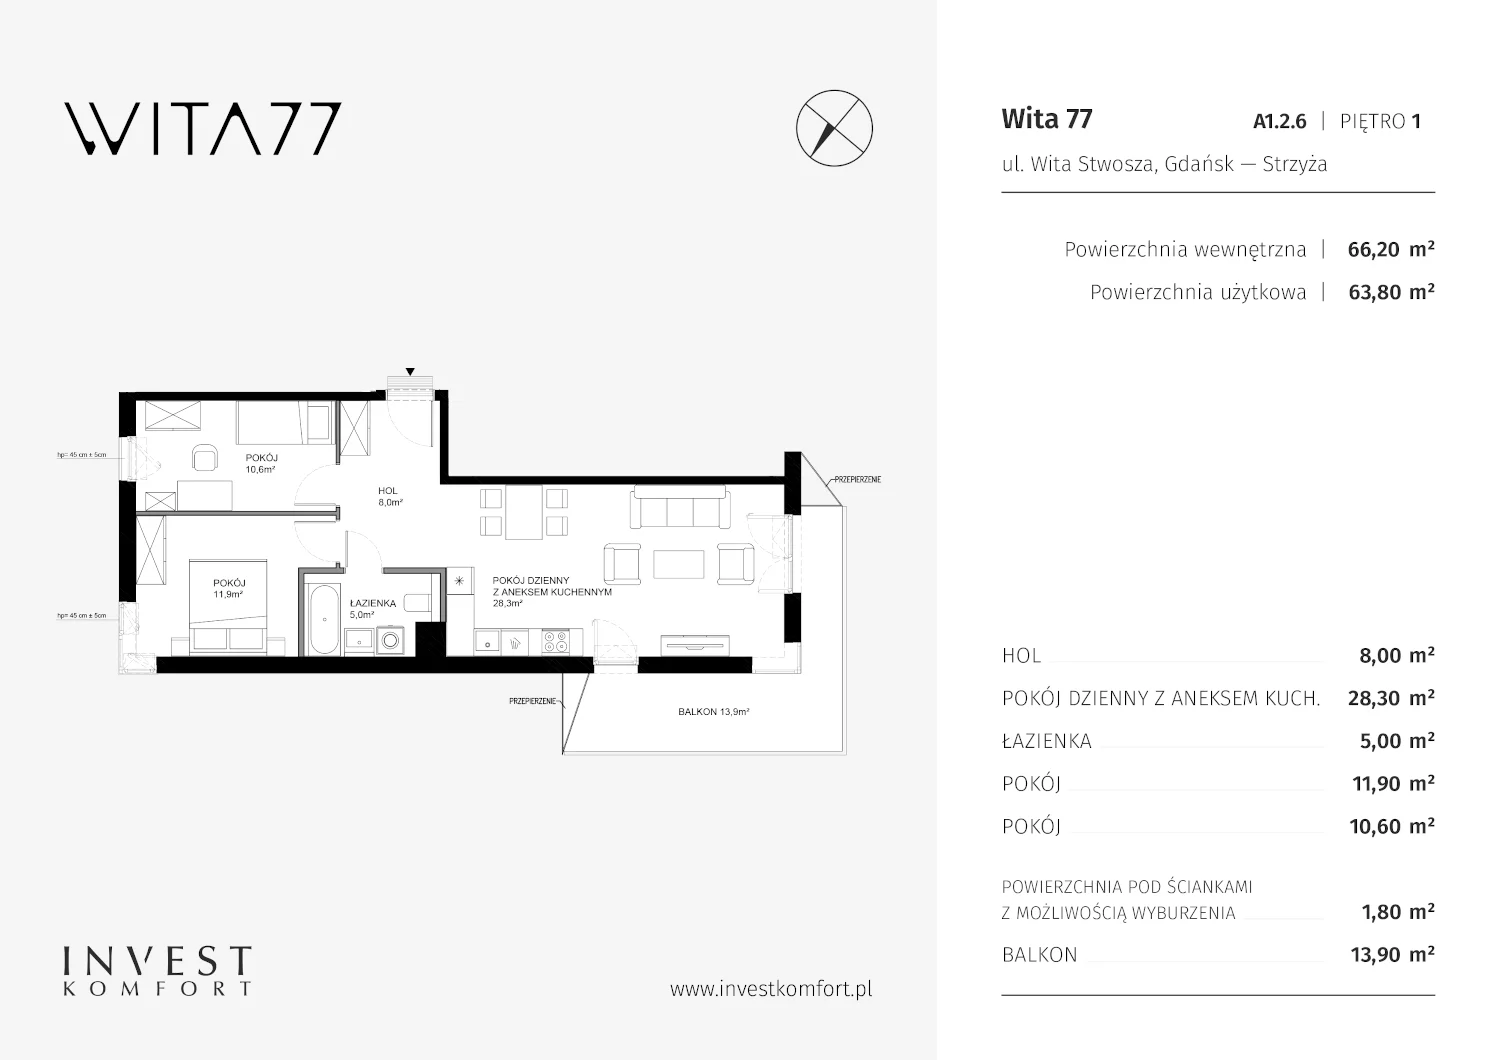 Apartament 66,20 m², piętro 1, oferta nr A1.2.6, Wita 77, Gdańsk, Strzyża, ul. Wita Stwosza 77